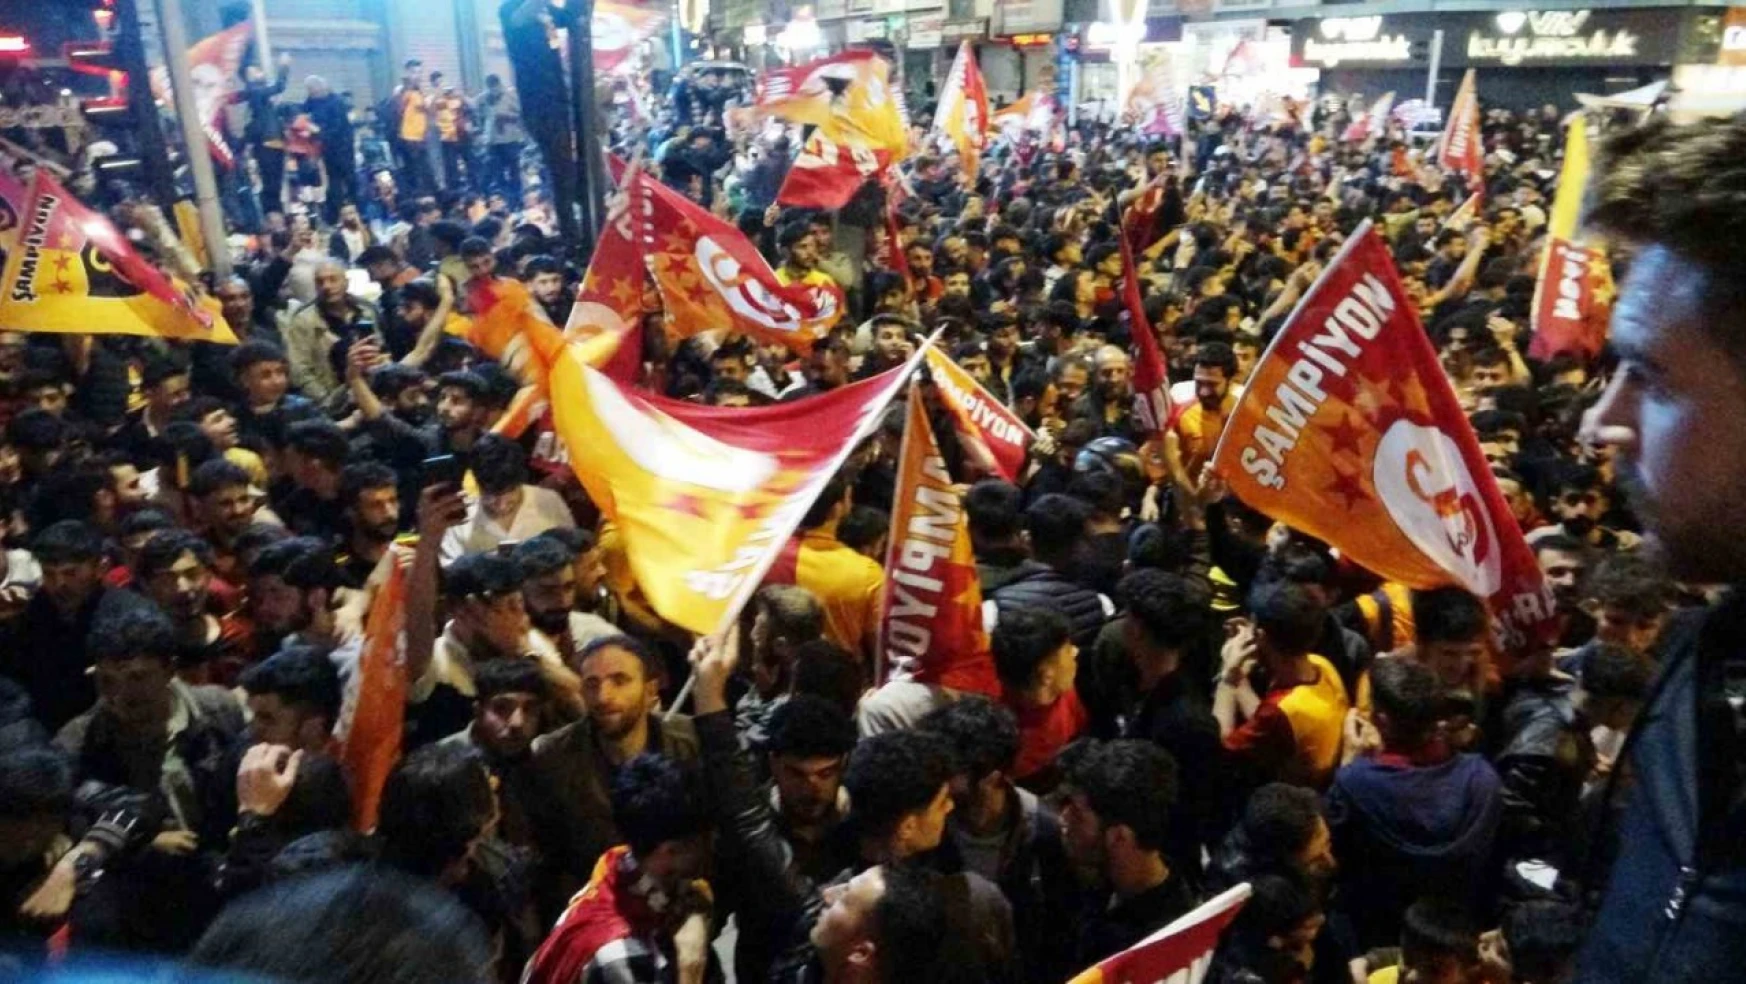 Galatasaraylı taraftarlar kutlama için Van'da sokağa döküldü